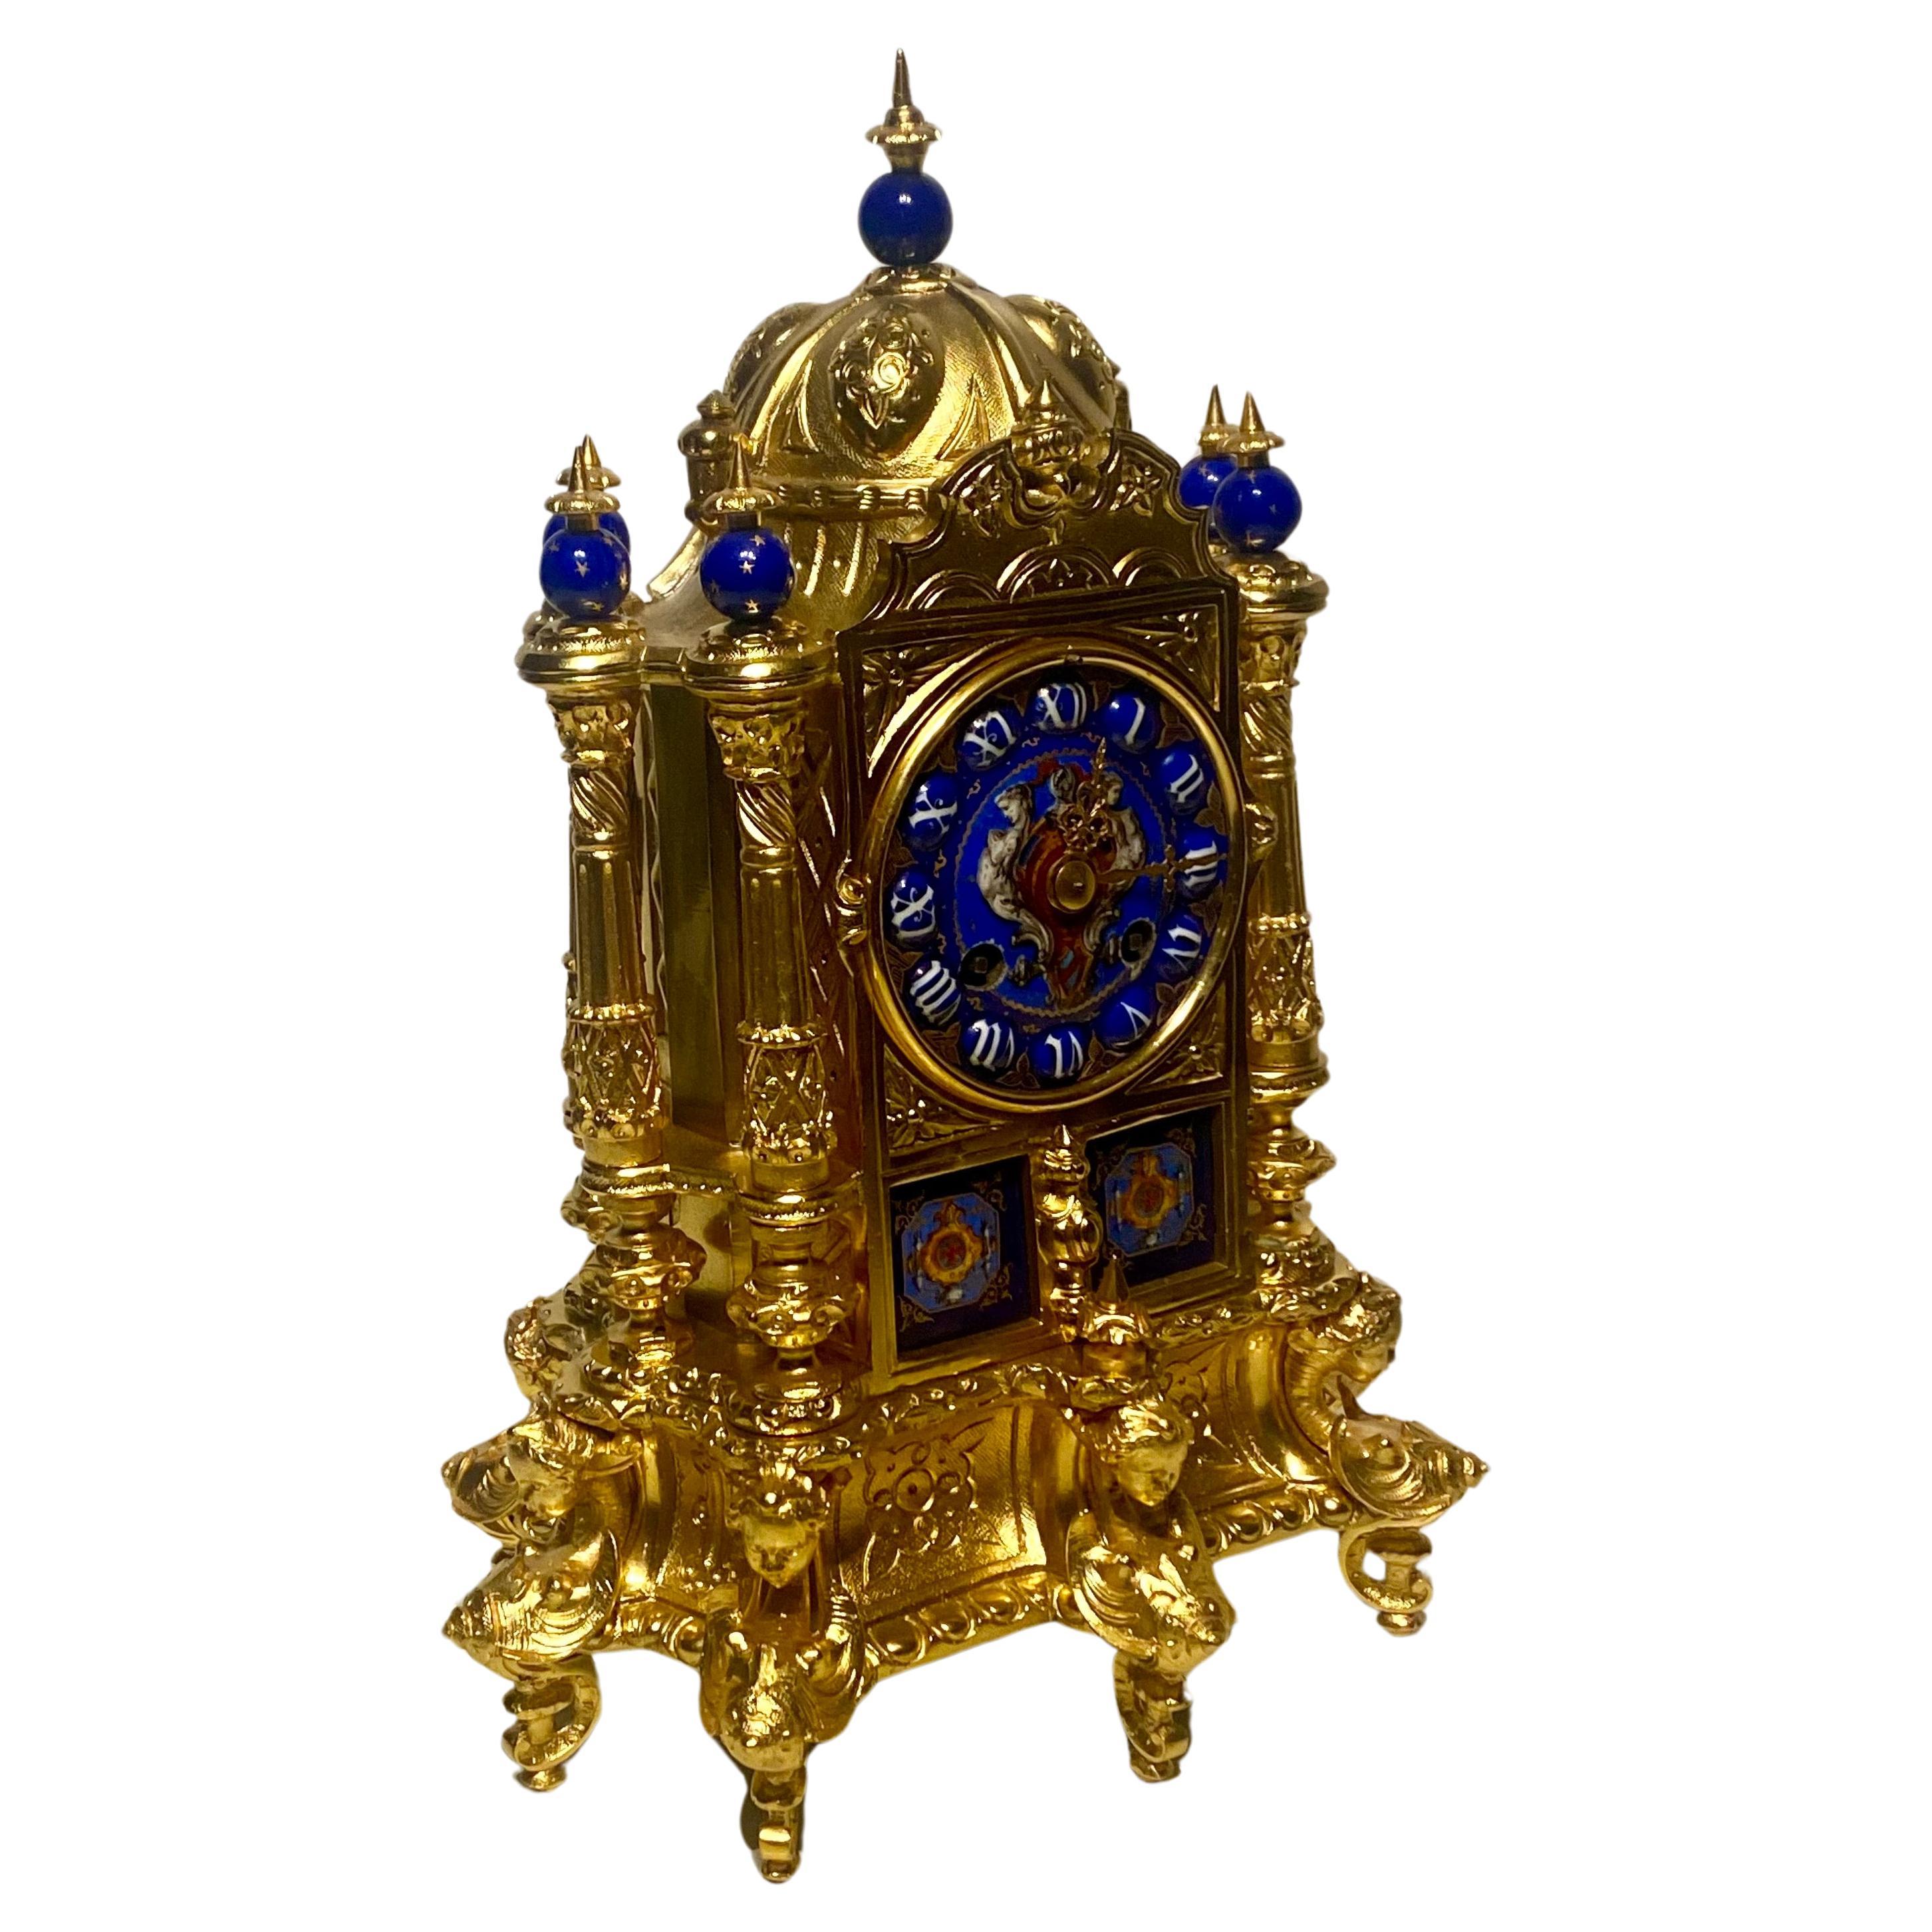 Pendule de cheminée de style Renaissance en bronze doré et émail
Français, fin du 19e siècle
Cette exquise horloge de cheminée est fabriquée dans le style néo-renaissance idiosyncrasique qui a trouvé sa pleine expression à la fin du XIXe siècle.